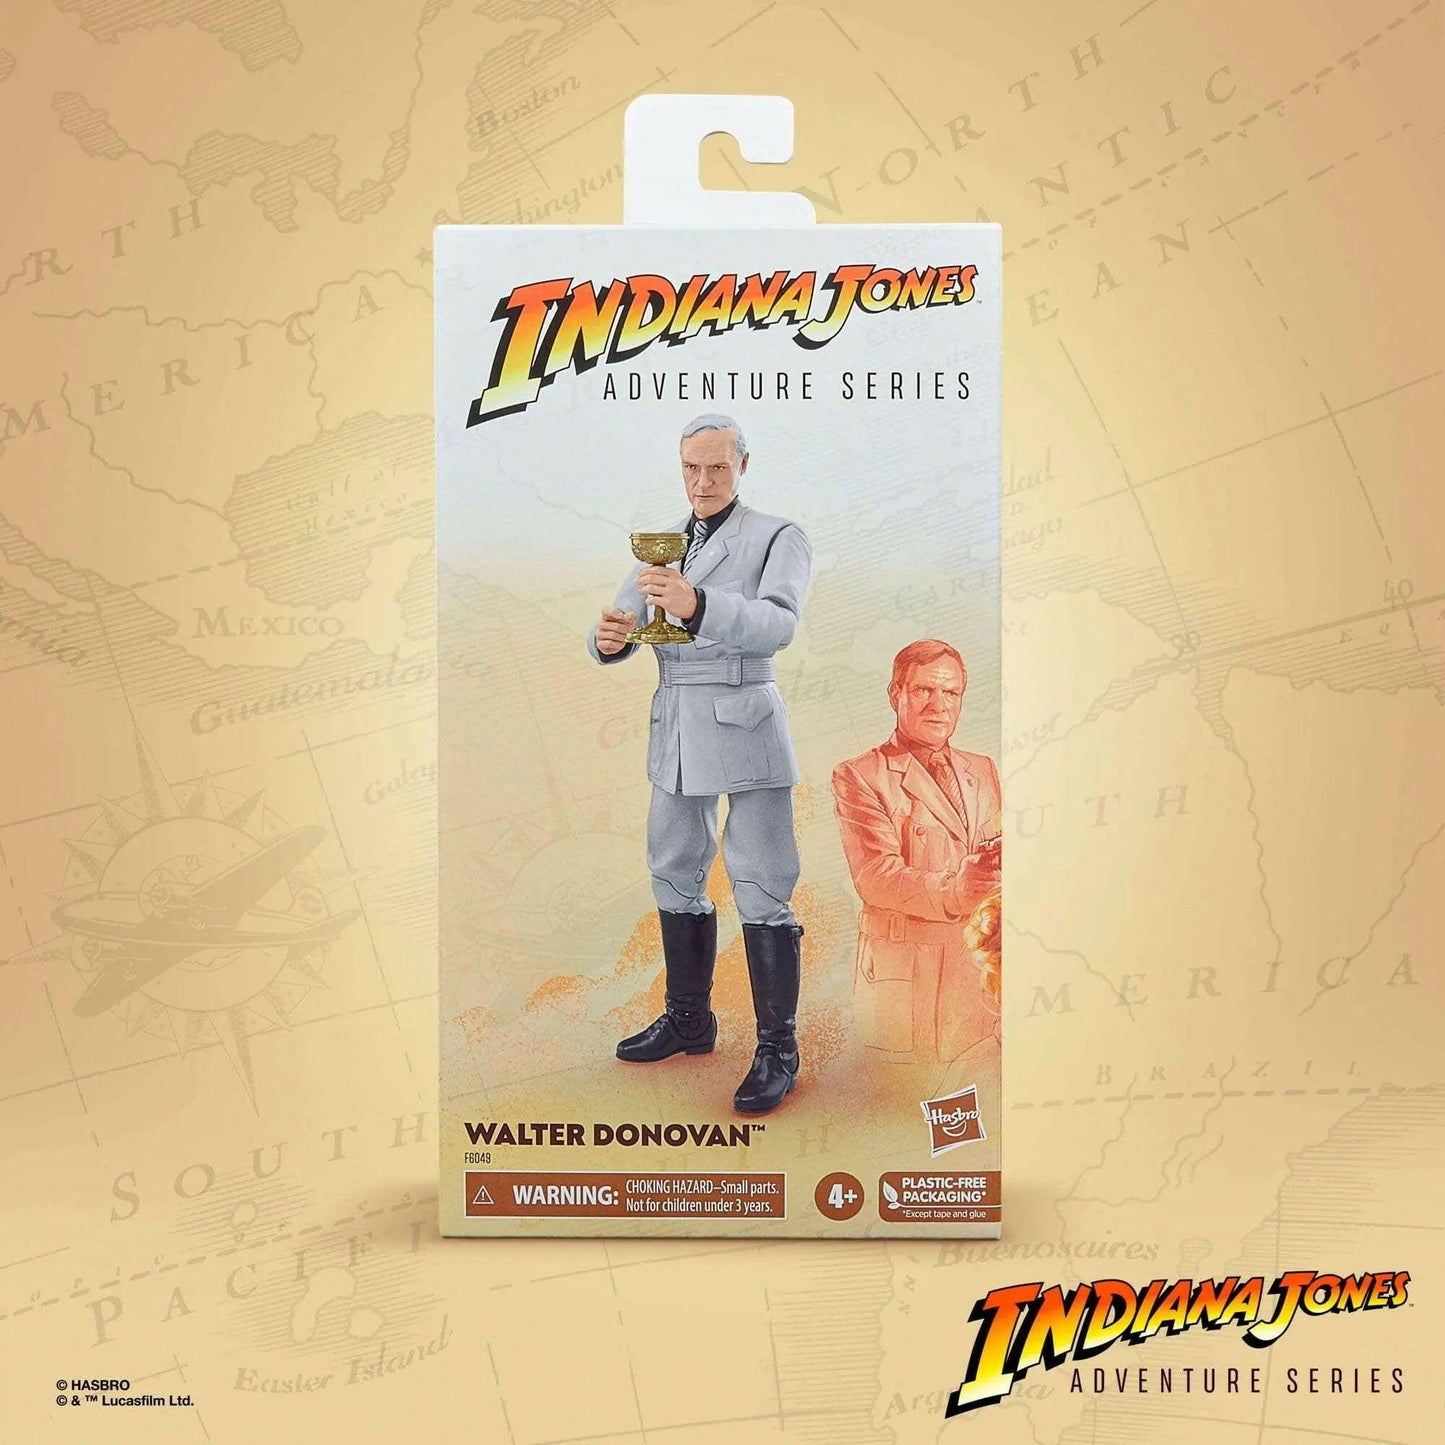 Indiana Jones Adventure Series Actionfigur Walter Donovan (Indiana Jones und der letzte Kreuzzug)15cm - Toy-Storage